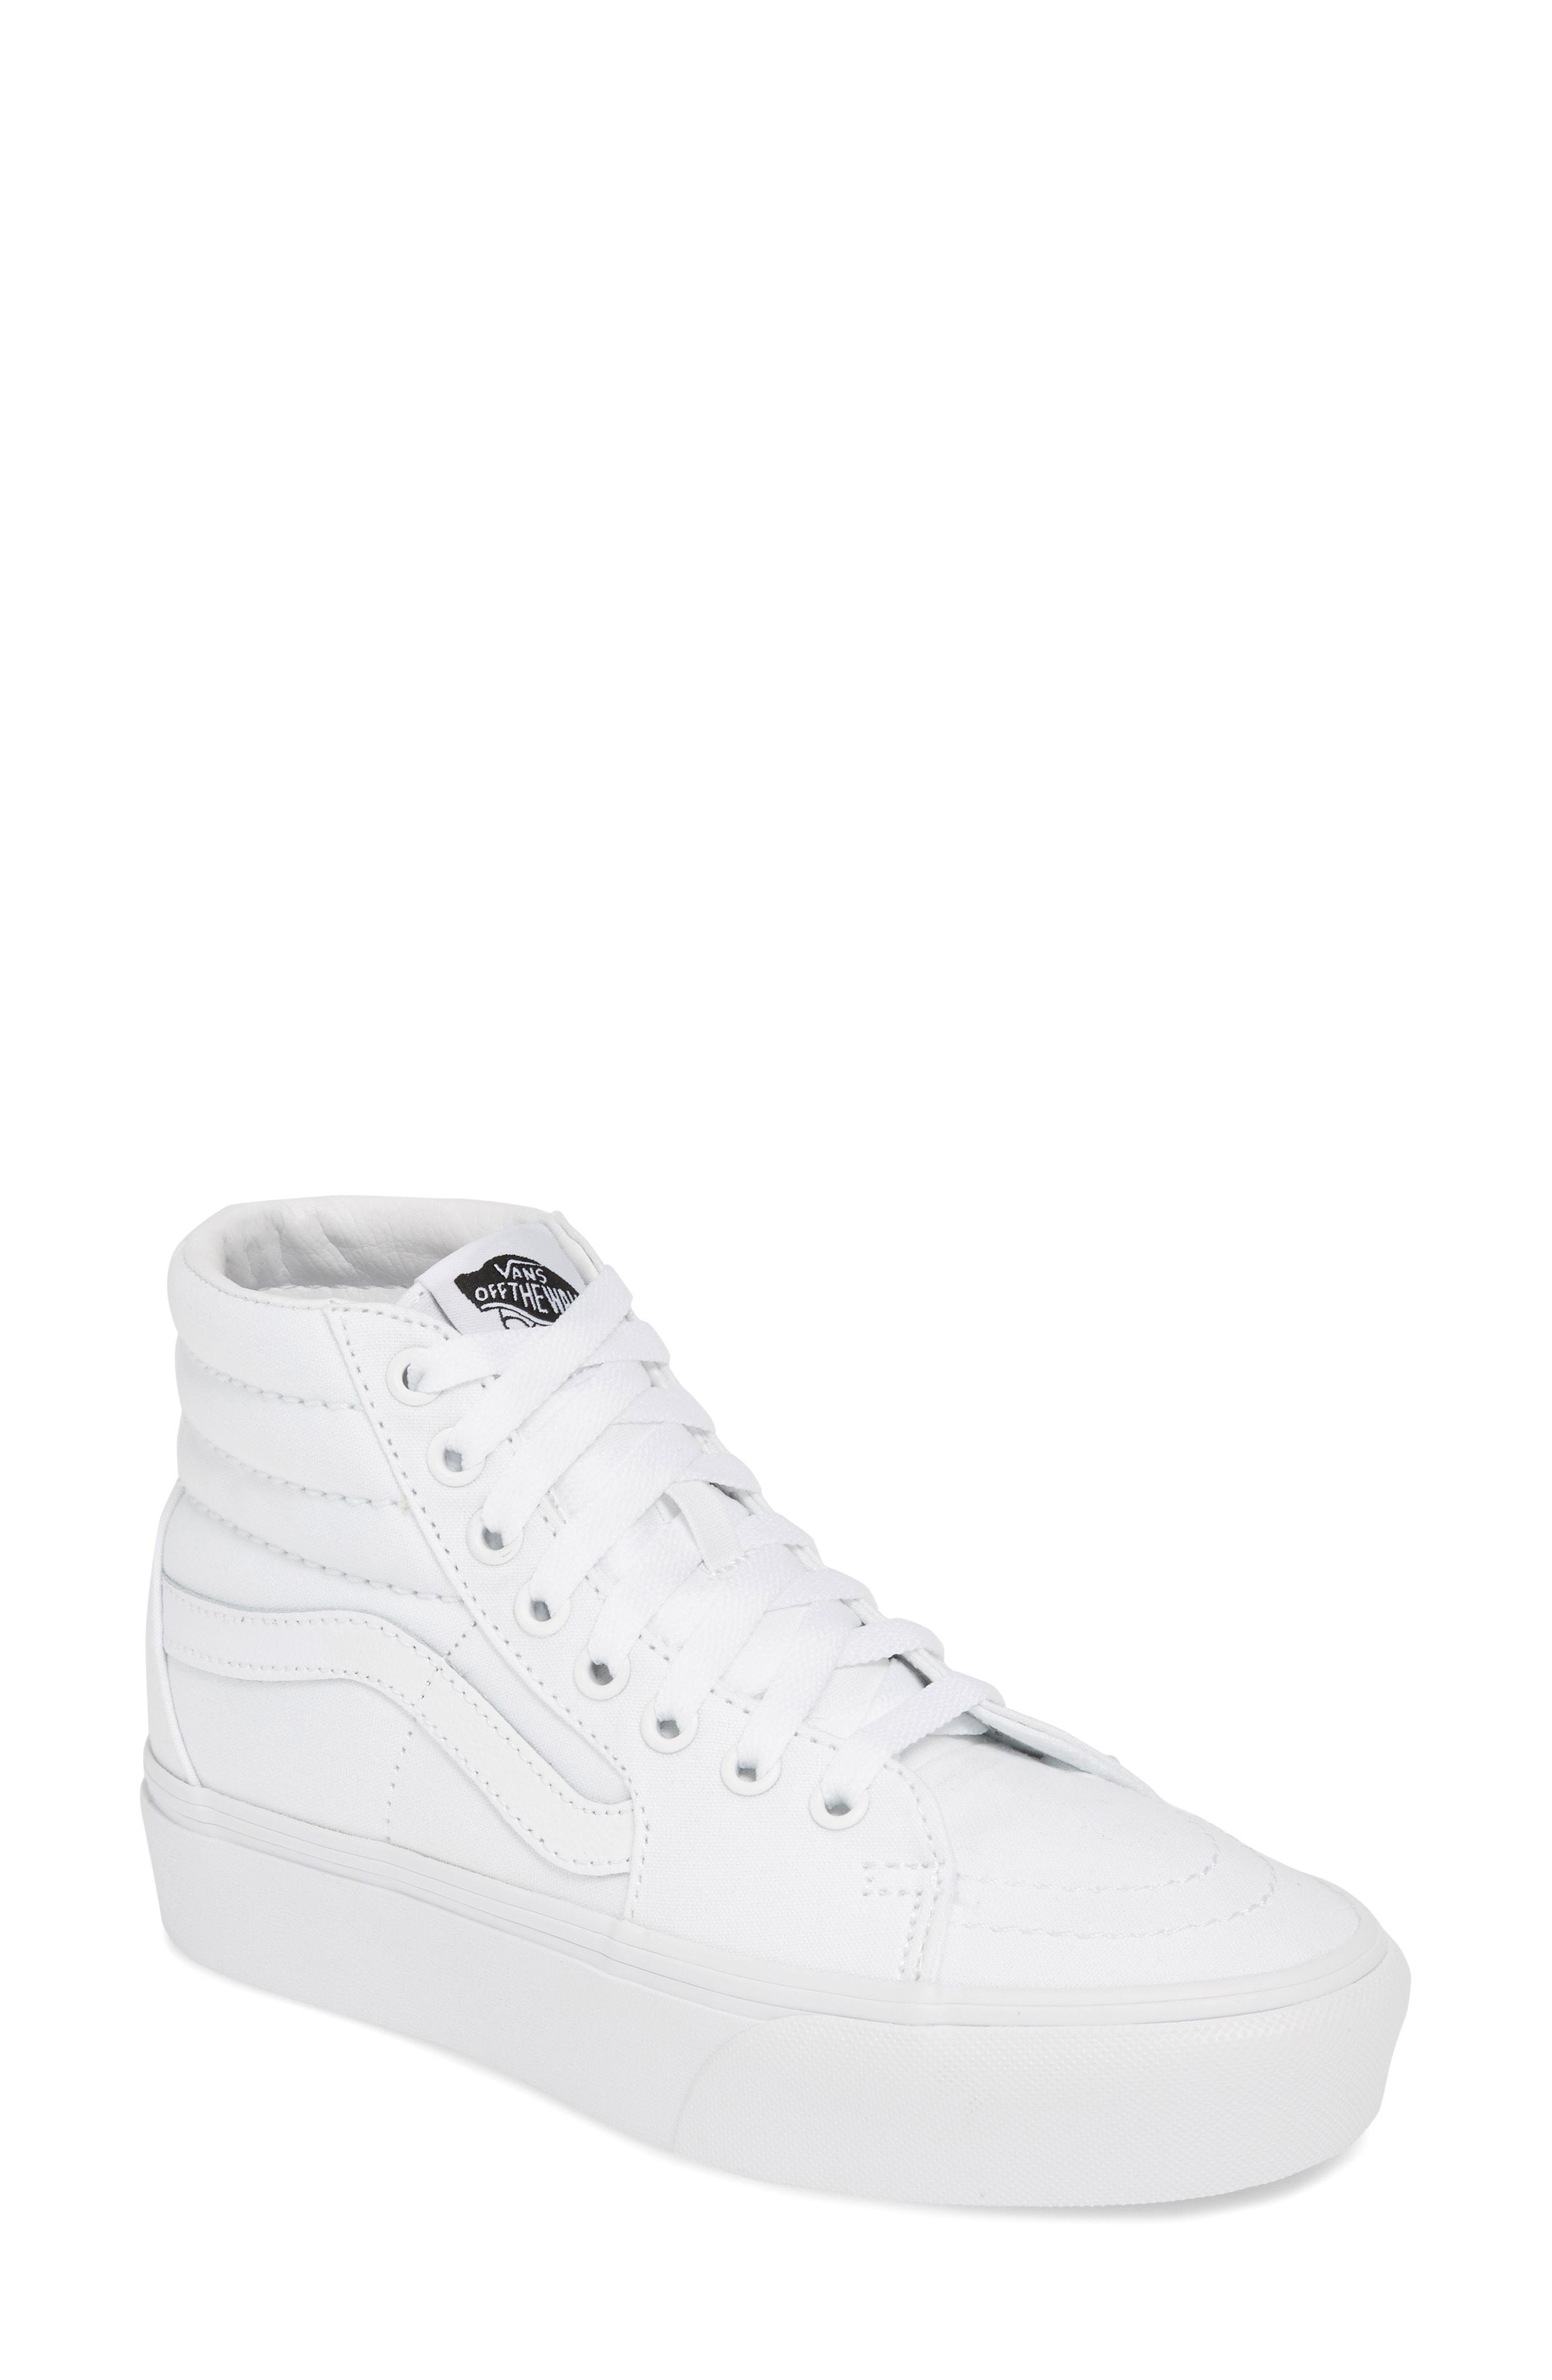 Vans Sk8 Hi Platform Sneaker, $69 